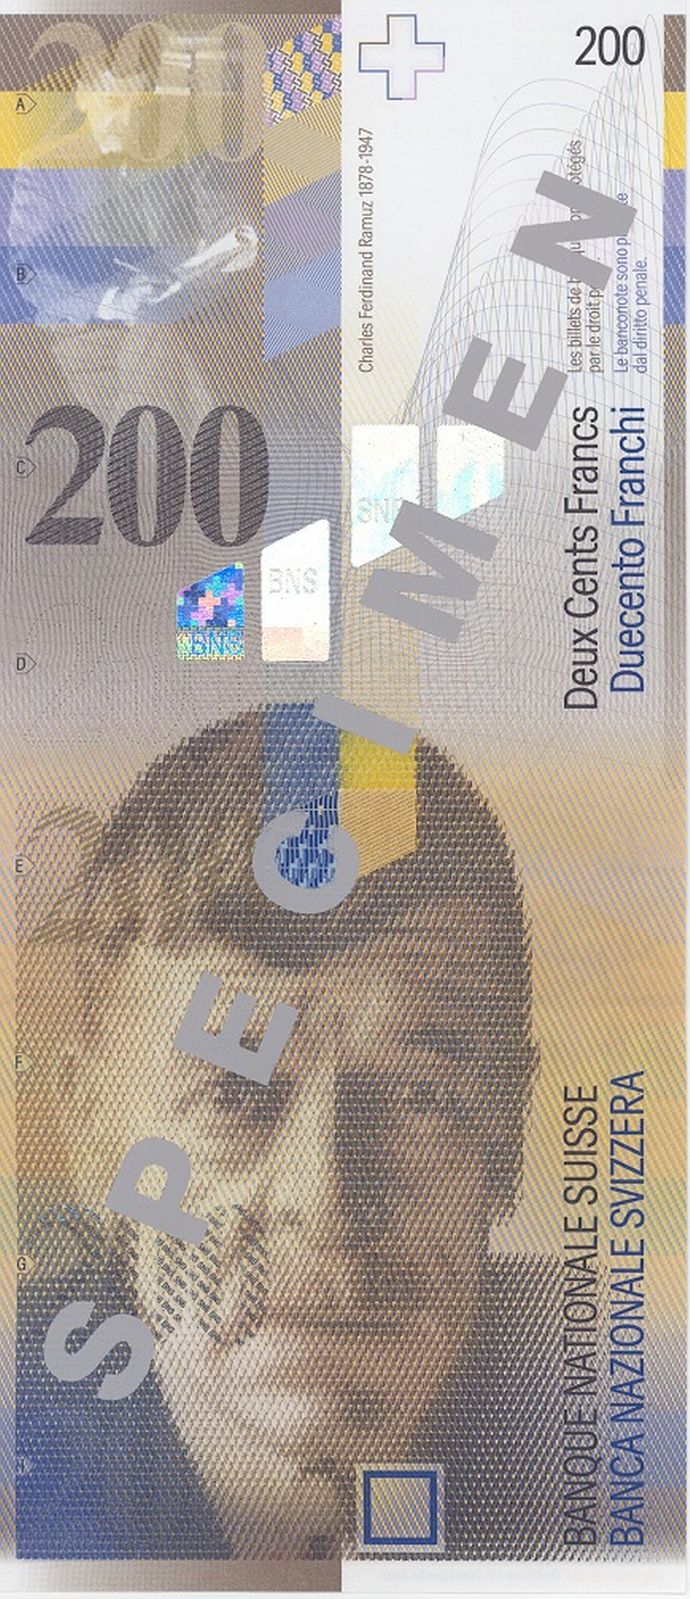 banknote_widget_series_8_design_denomination_200_front.n.jpg